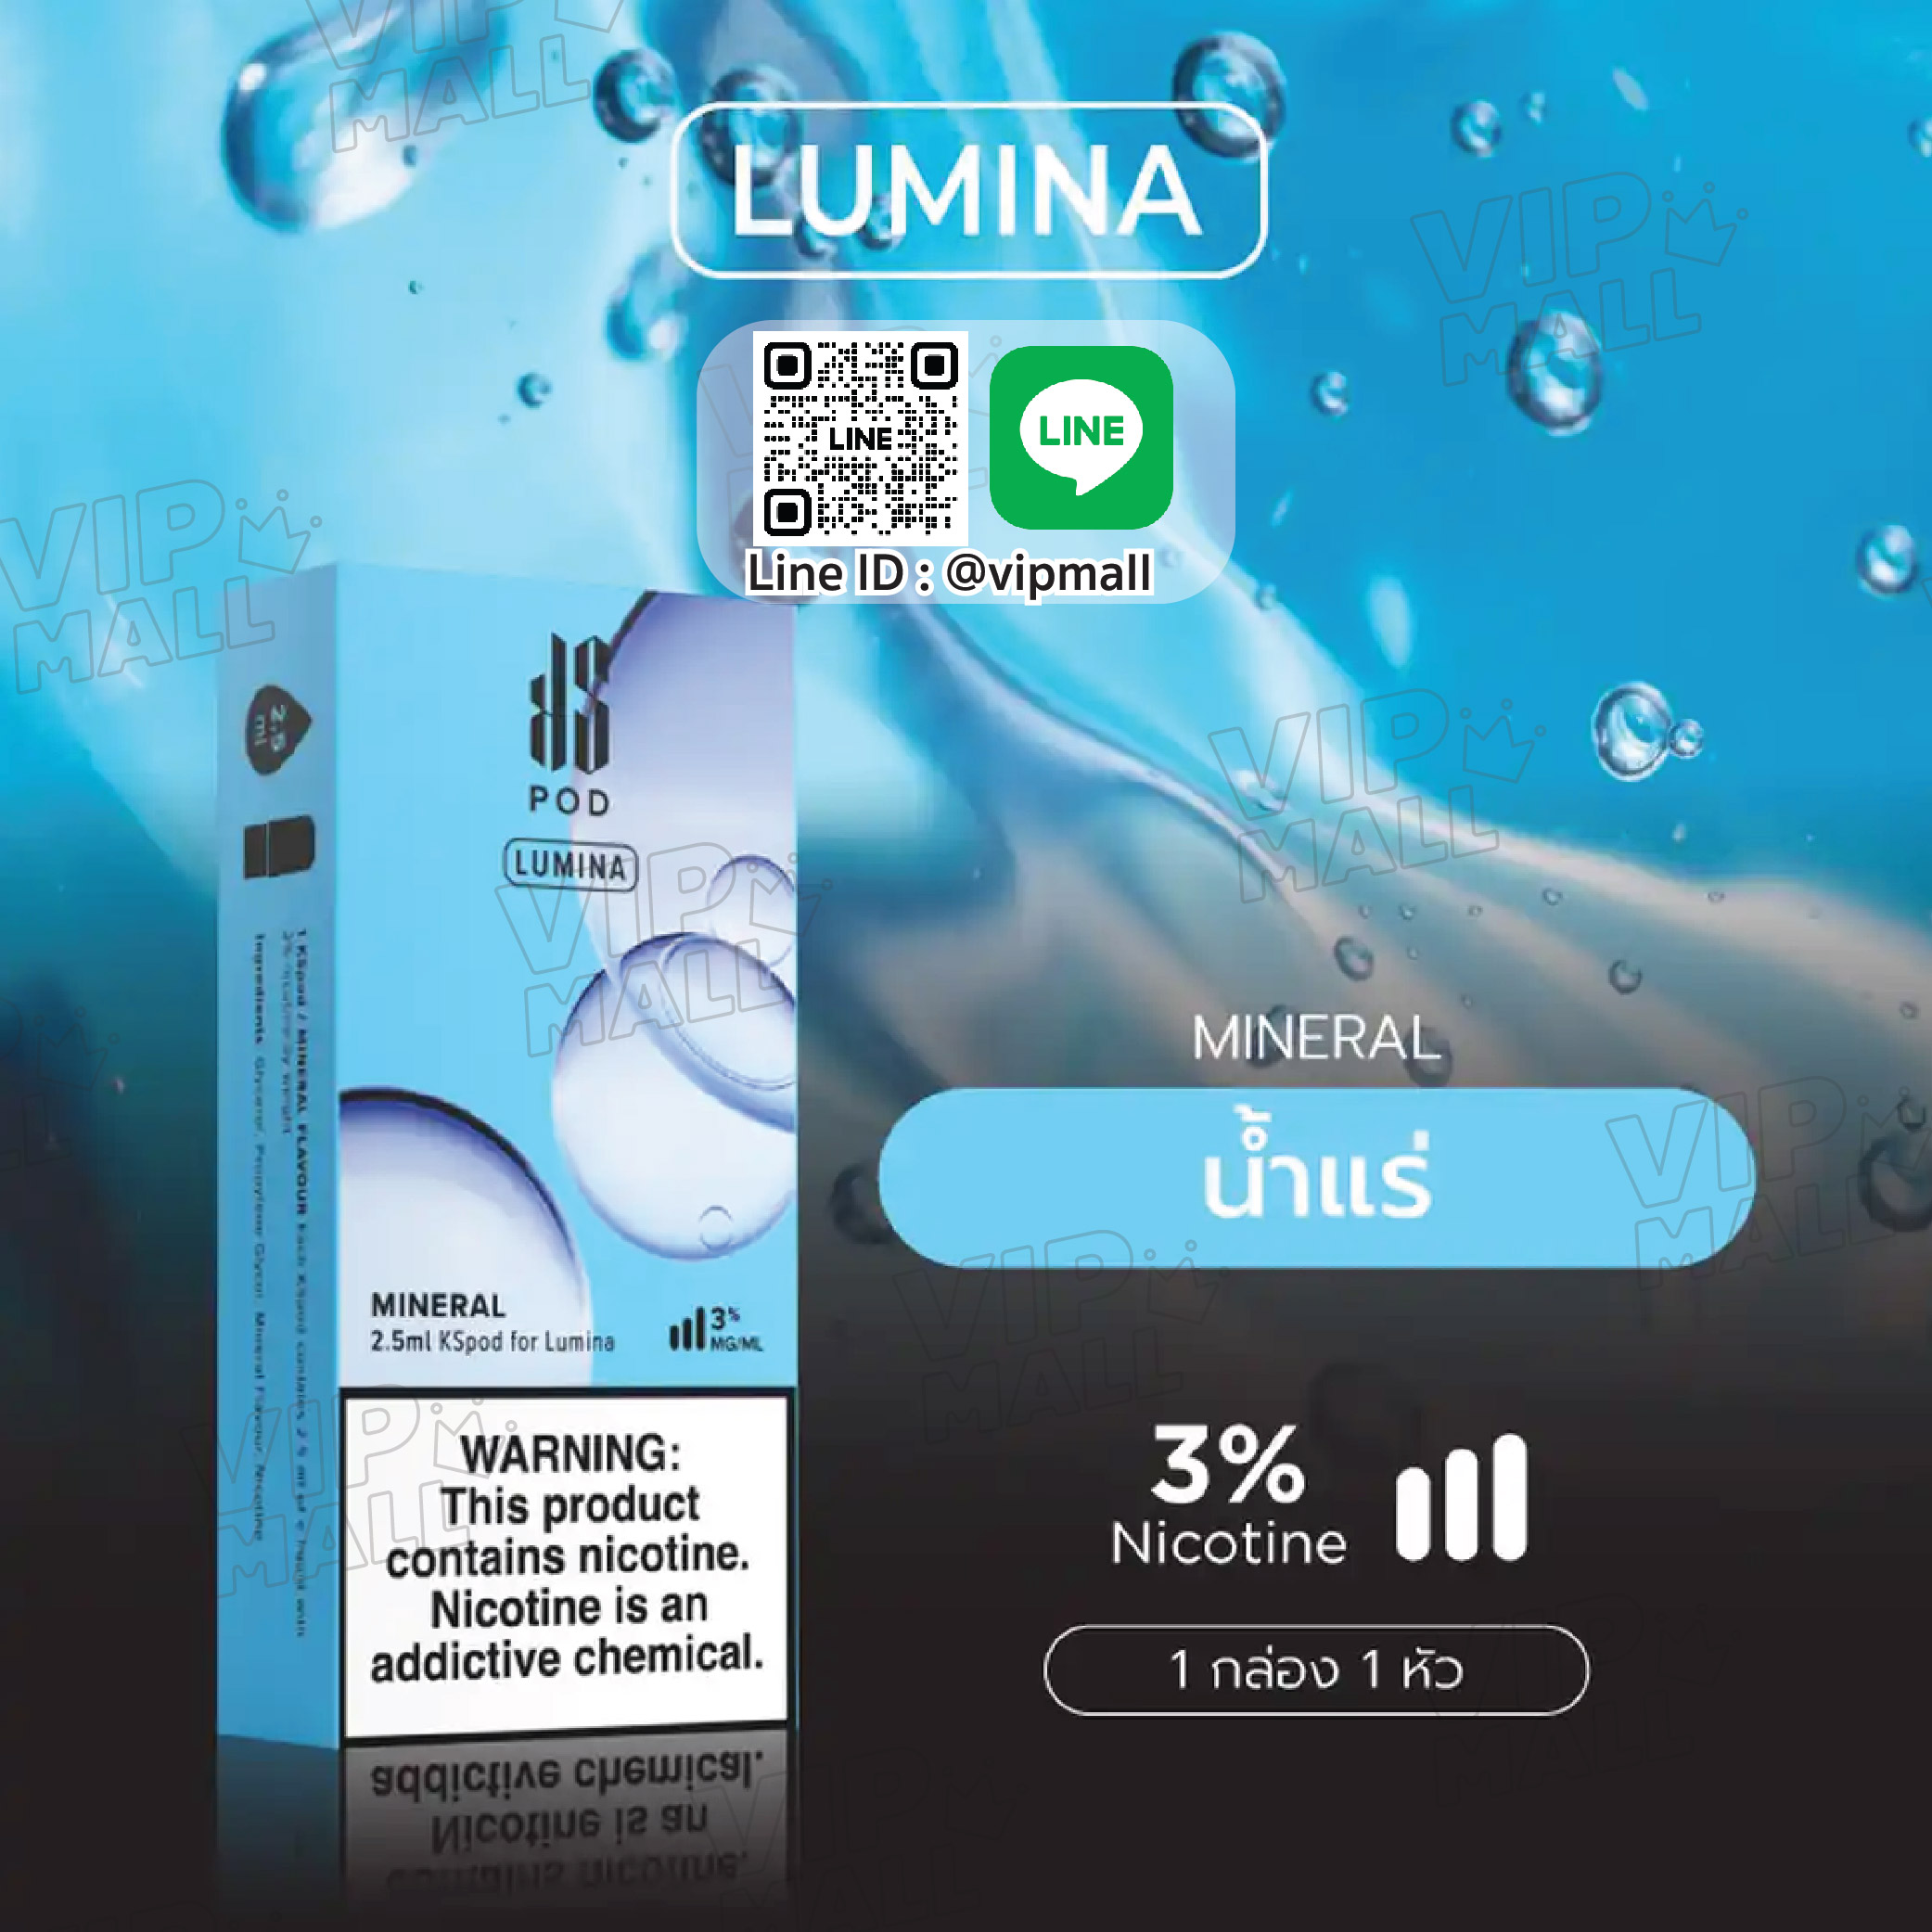 KS Lumina Pod กลิ่น น้ำแร่ ของพอตตัวล่าสุดอย่าง Lumina ยังคงเป็นที่ชื่นชอบอยู่เสมอ แต่ที่พิเศษ คือมาพร้อมกับปริมาณน้ำยาจุถึง 2.5 ml vape กันได้ยาวนานสุดๆ